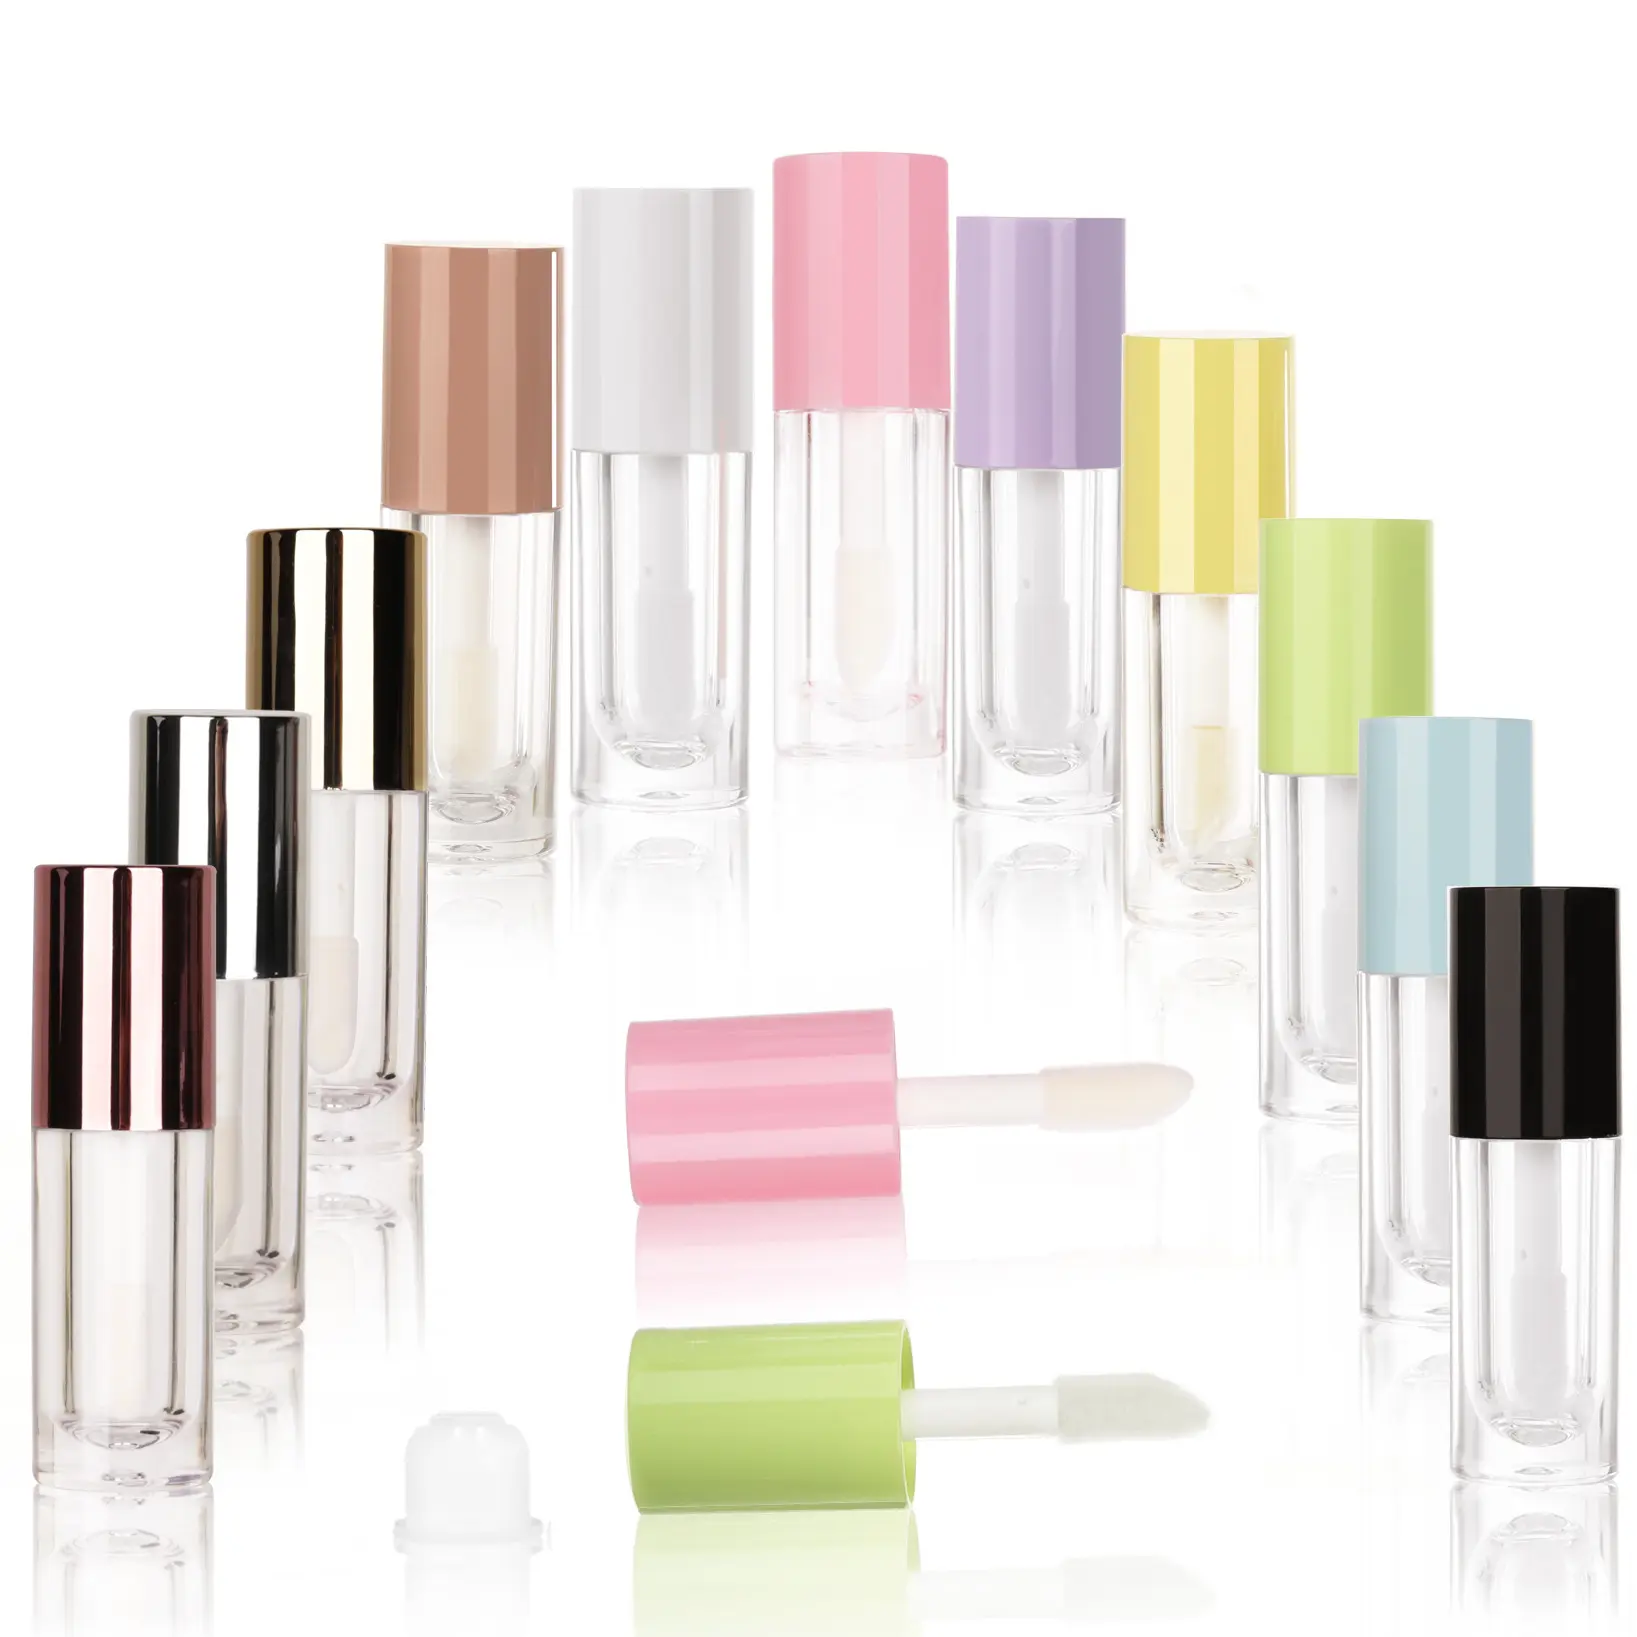 DX atacadista oem tubos de plástico redondos para maquiagem personalizáveis de 6ml tubos de brilho labial embalagem de tubos de cosméticos tubos de brilho labial